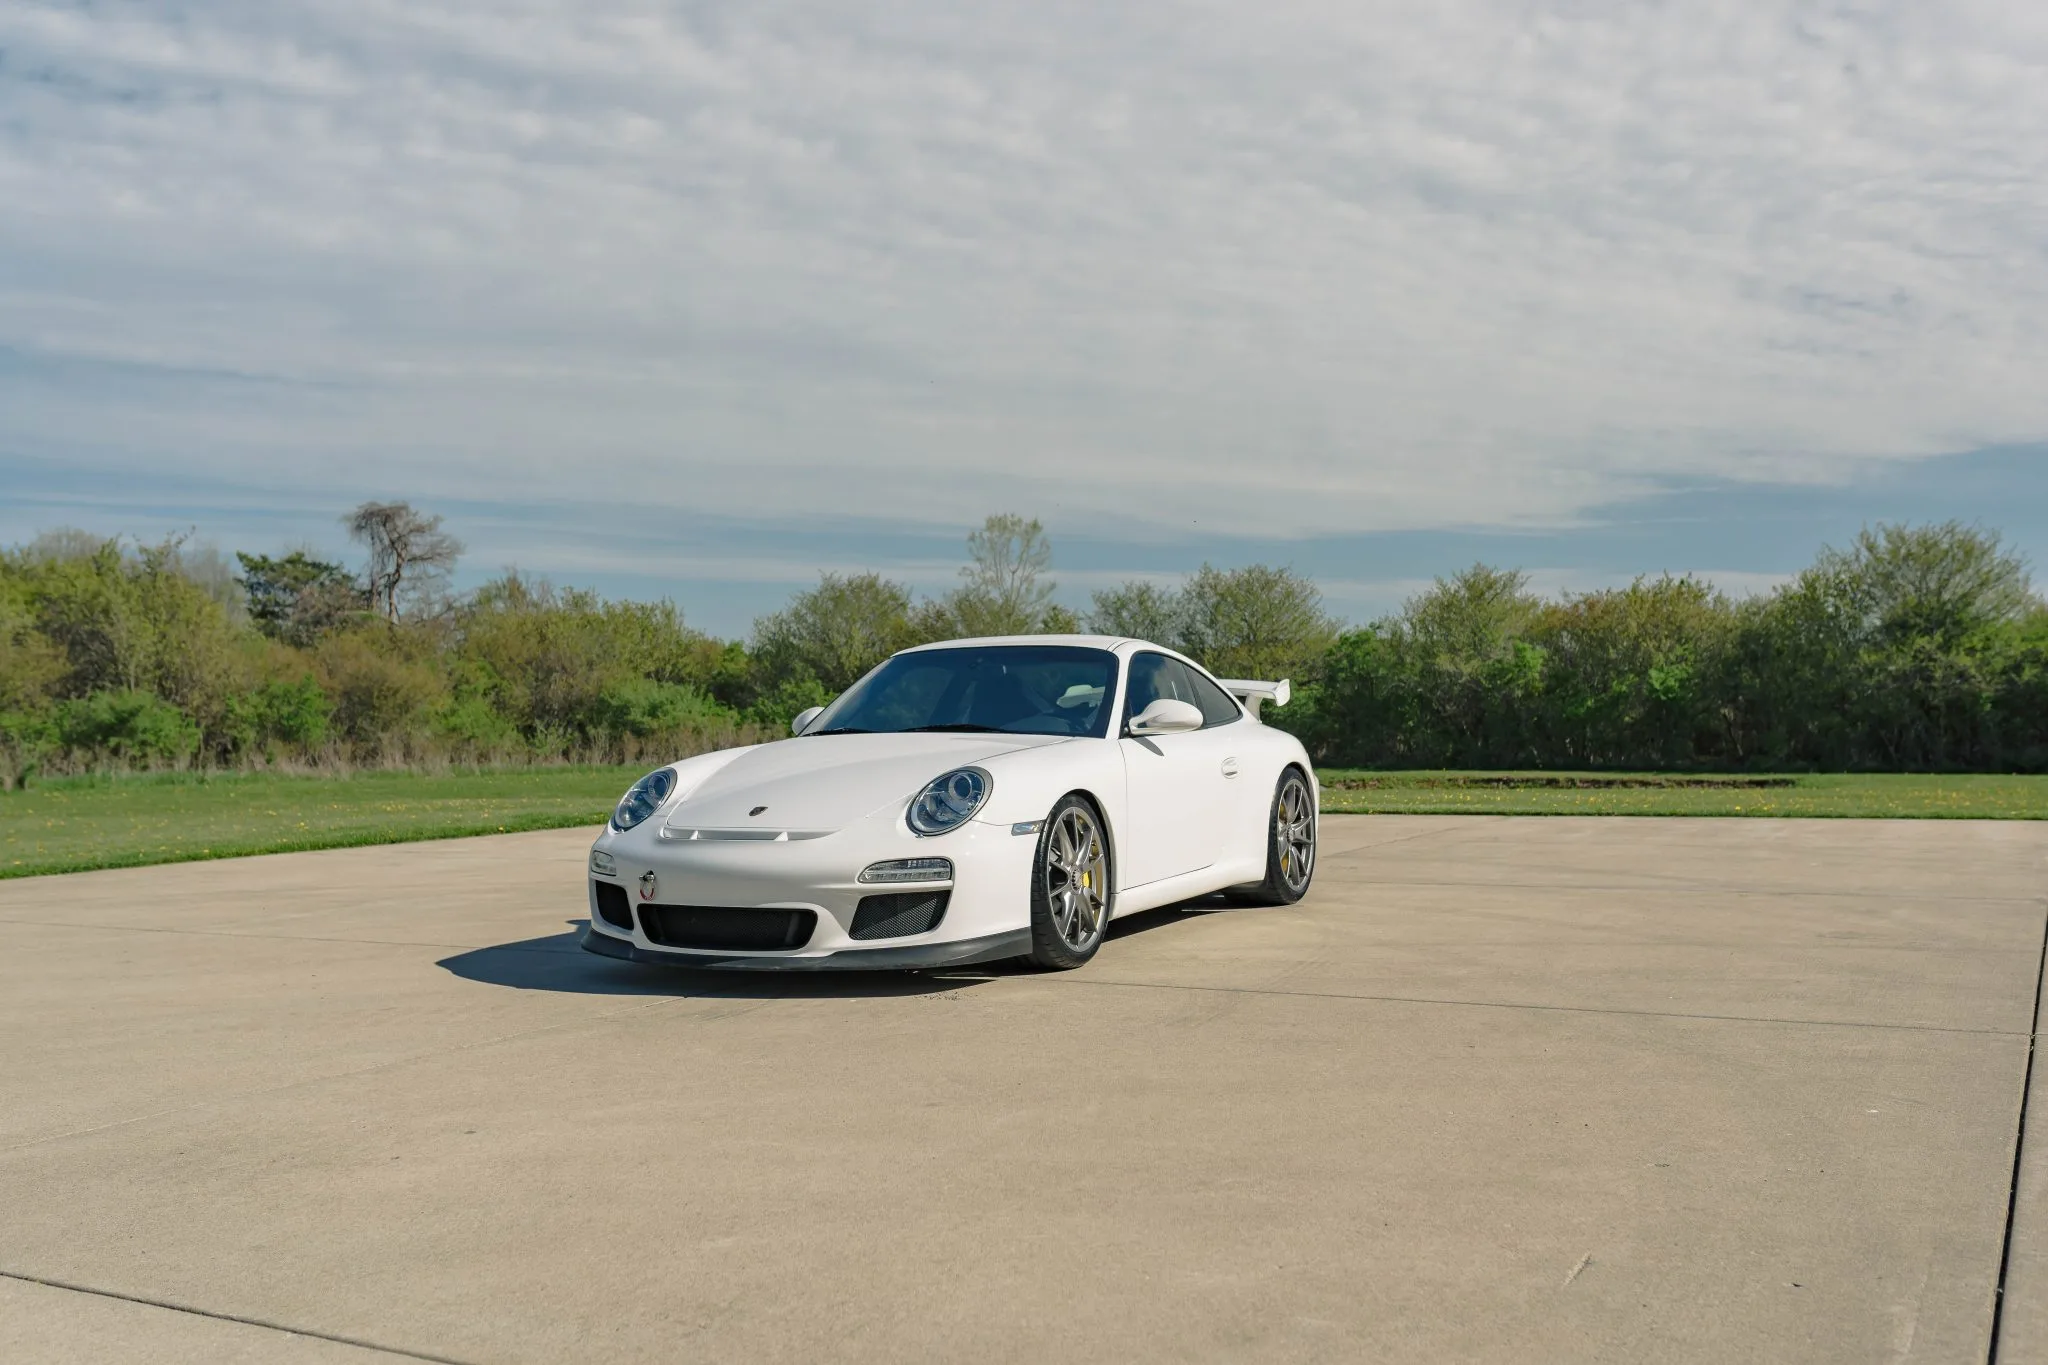 For Sale: 2010 Porsche 911 GT3 In Carrera White